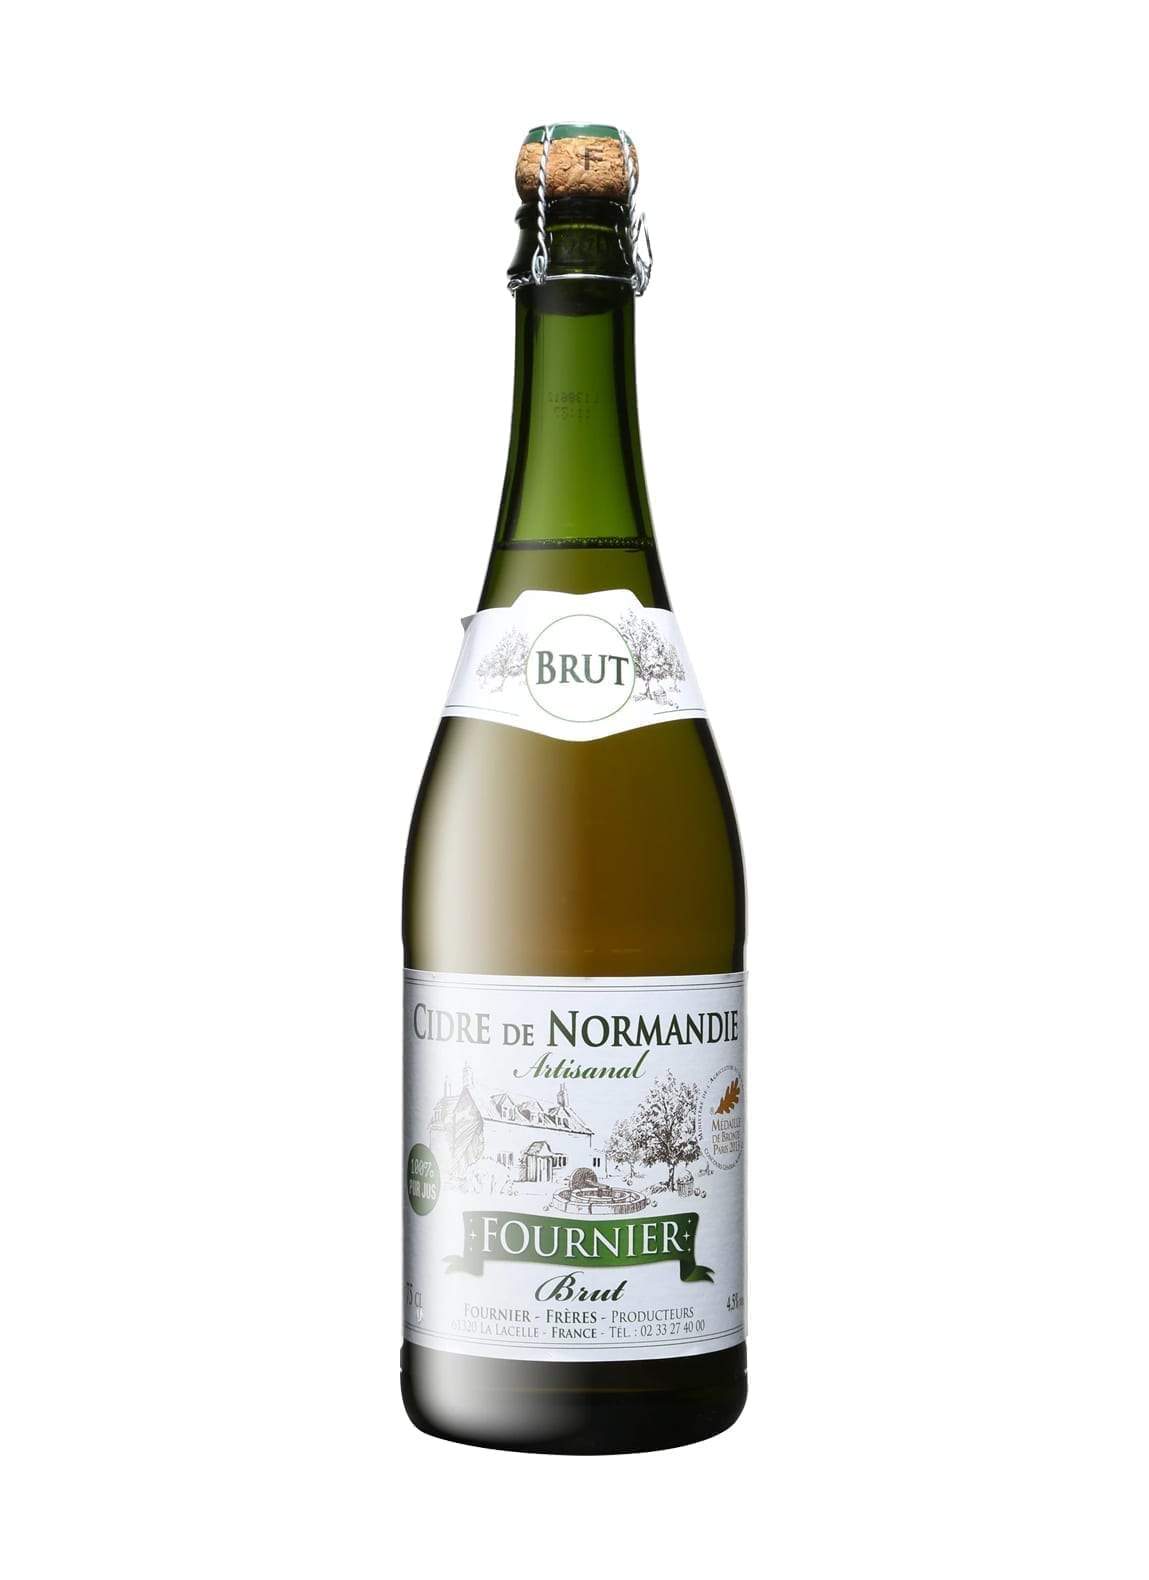 Fournier Brut Cidre de Normandie (dry apple cider) Artisanal 4.5% 750ml | Hard Cider | Shop online at Spirits of France